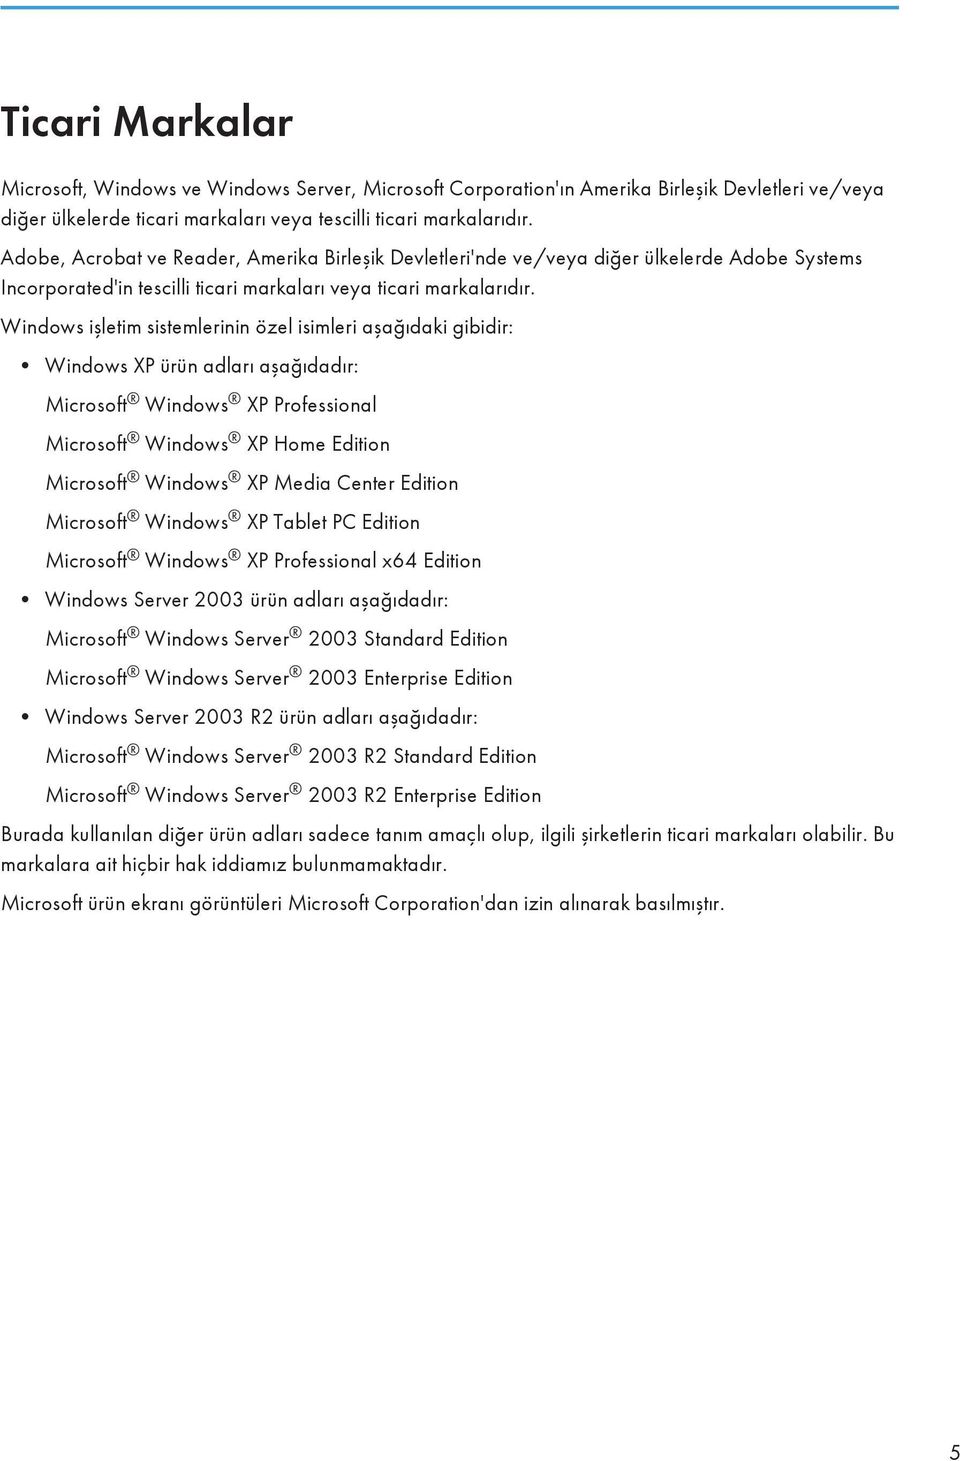 Windows işletim sistemlerinin özel isimleri aşağıdaki gibidir: Windows XP ürün adları aşağıdadır: Microsoft Windows XP Professional Microsoft Windows XP Home Edition Microsoft Windows XP Media Center